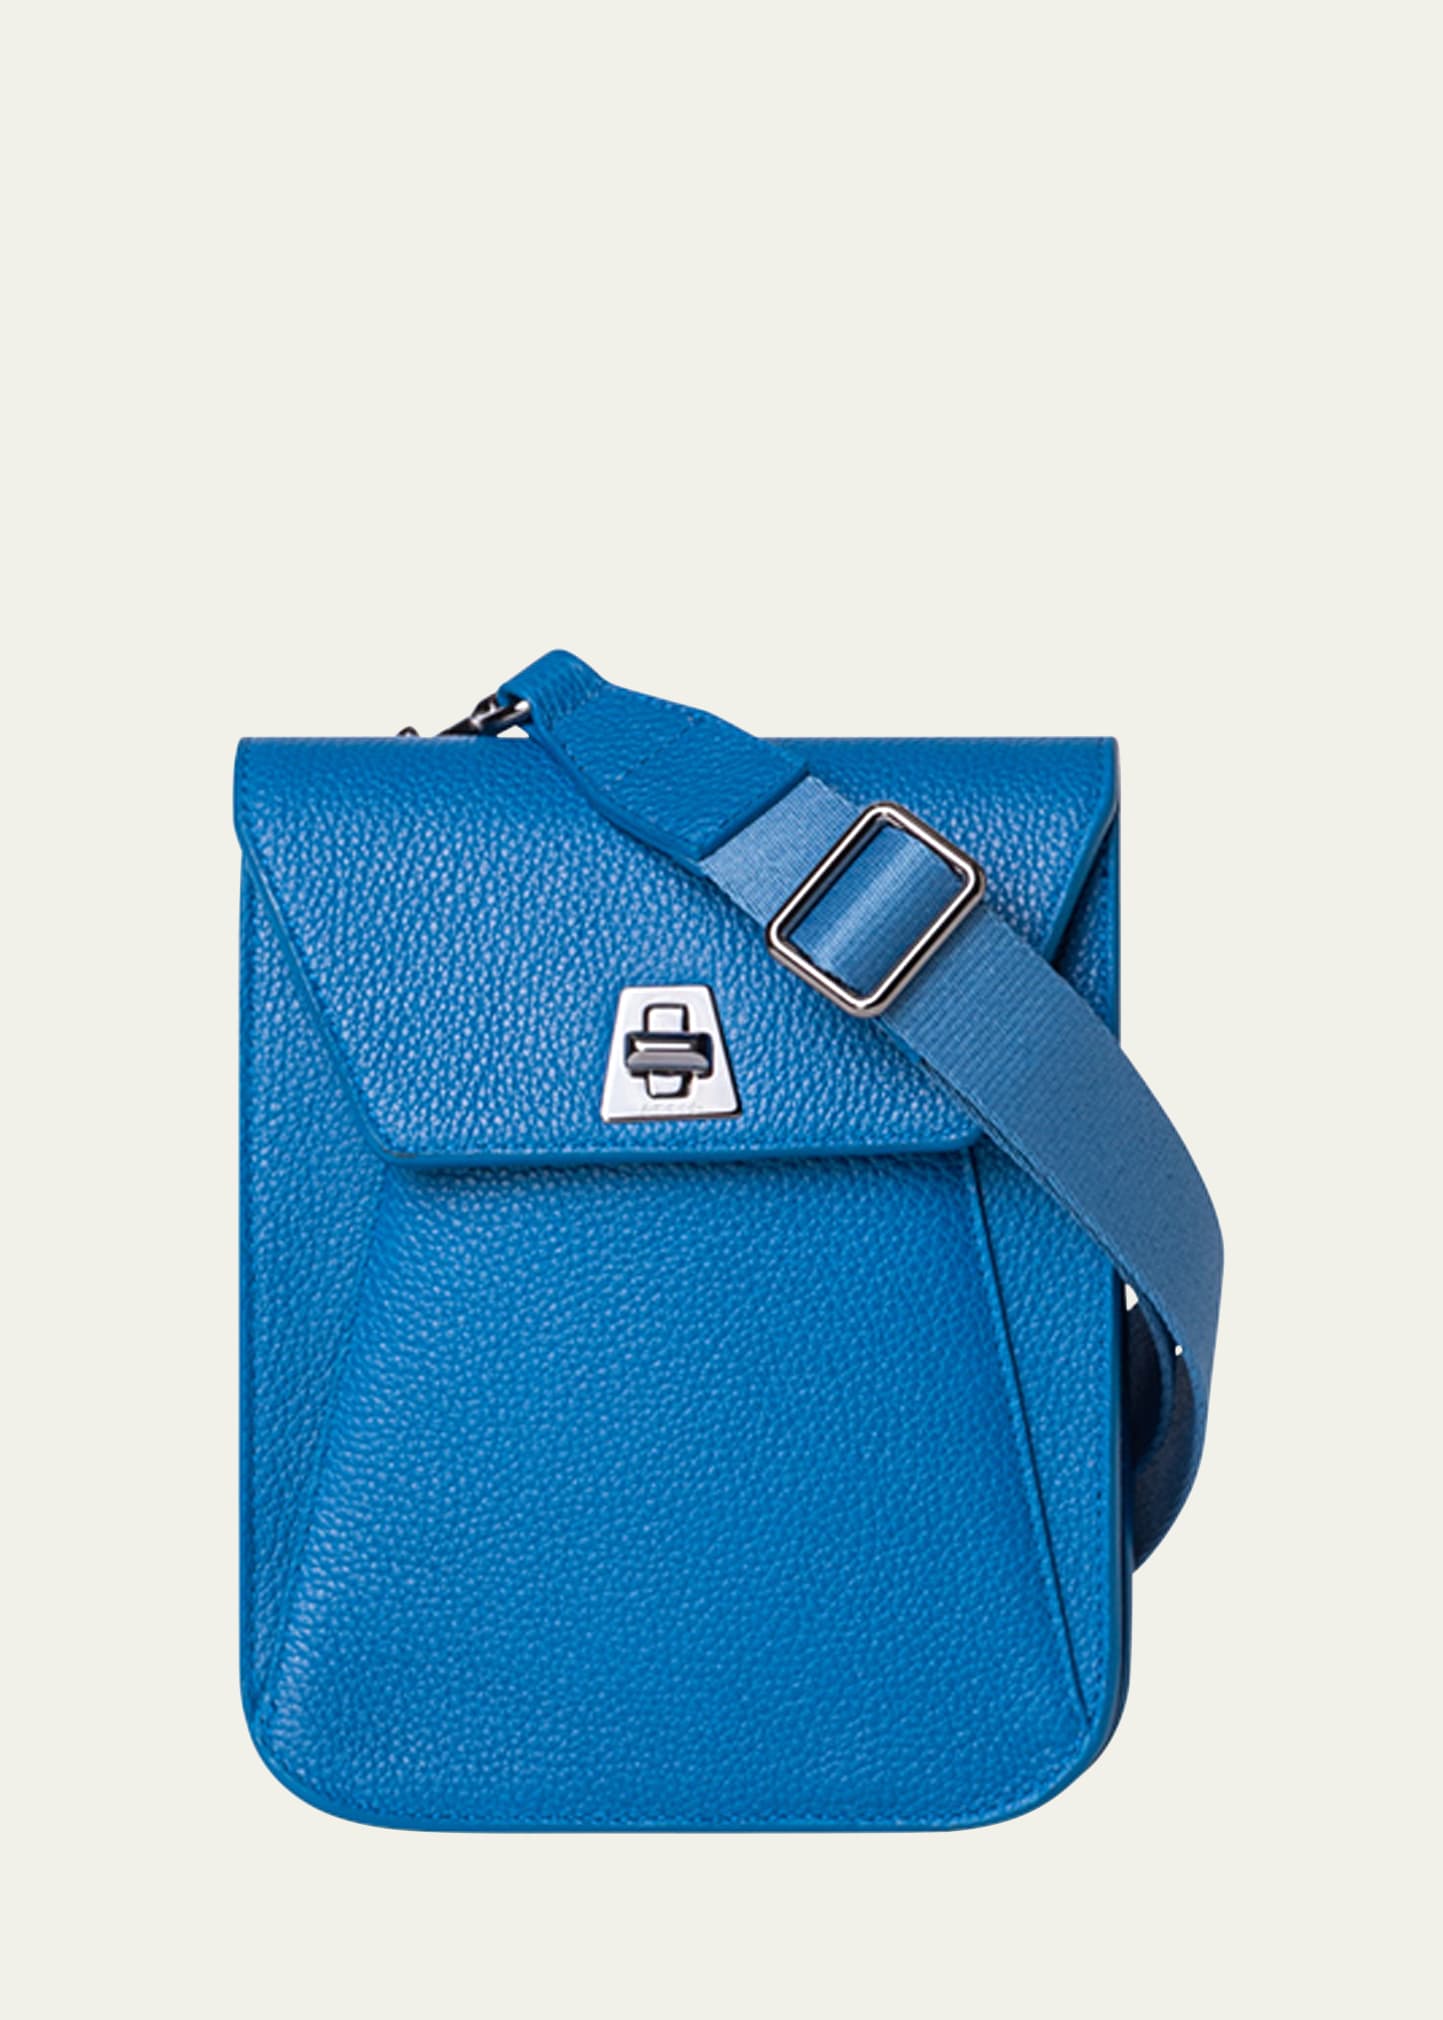 Anouk Mini Flap Leather Messenger Bag